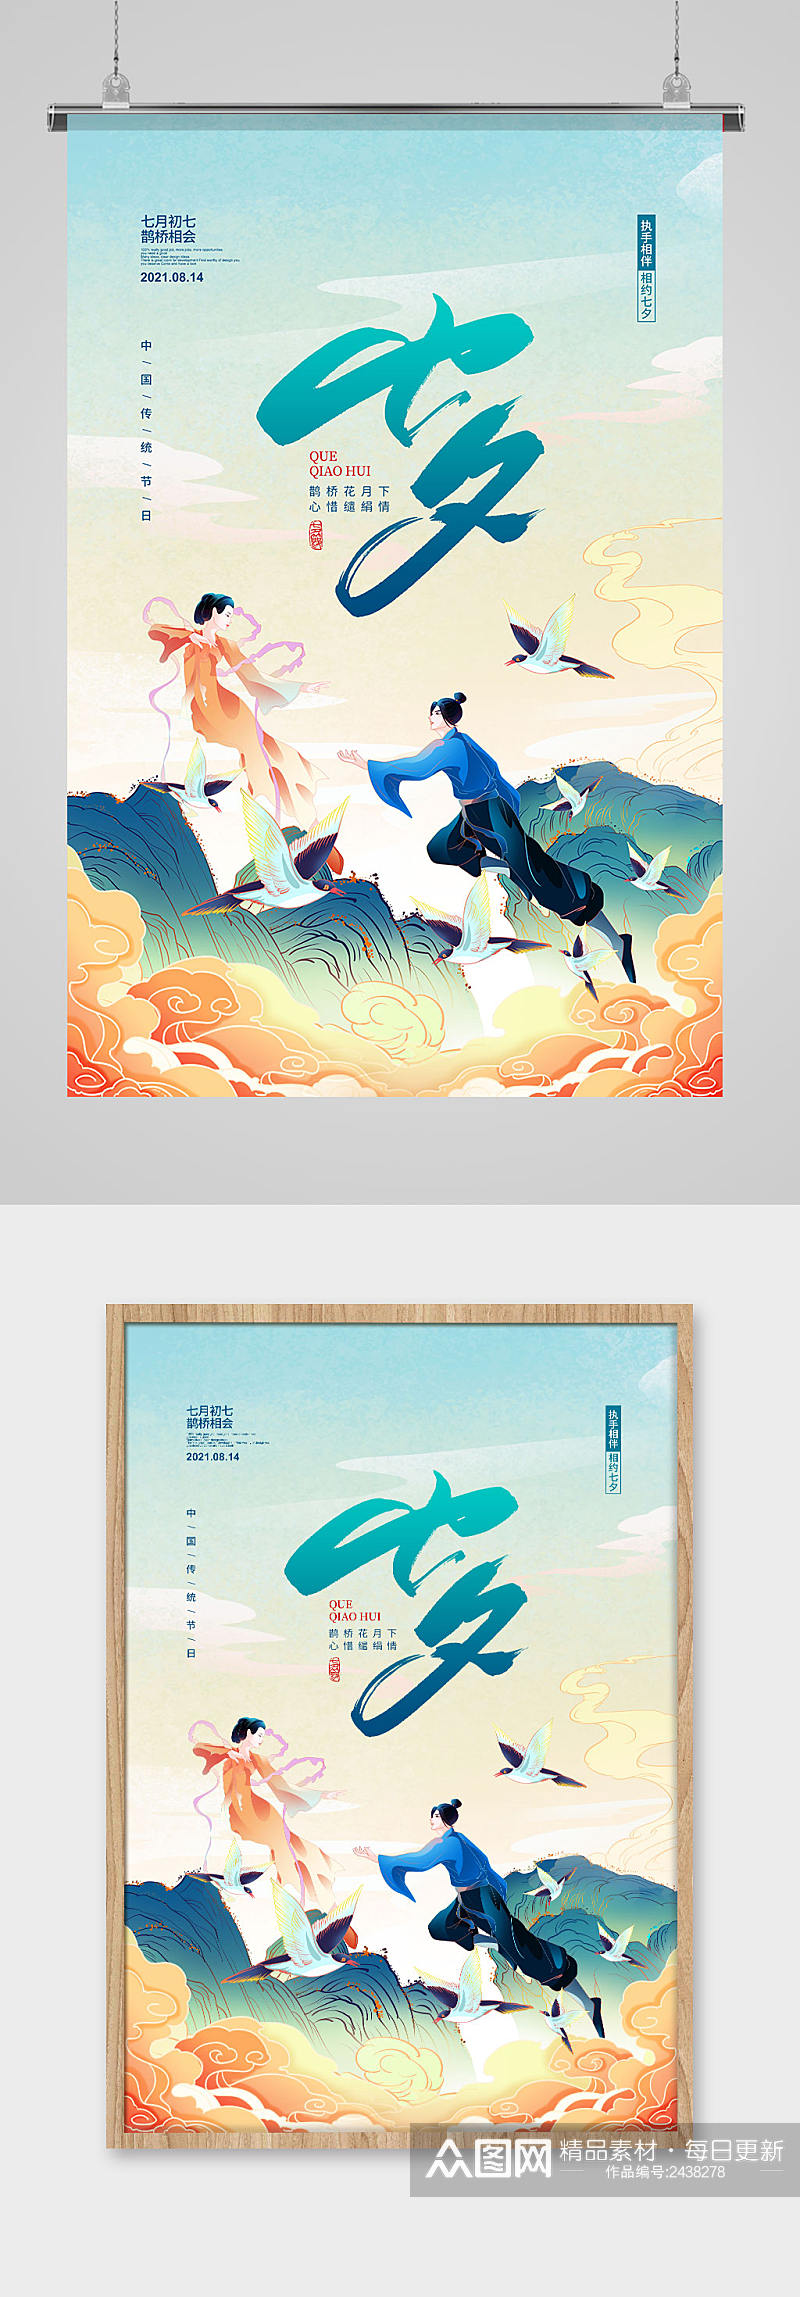 传统节日七夕情人节宣传海报设计素材